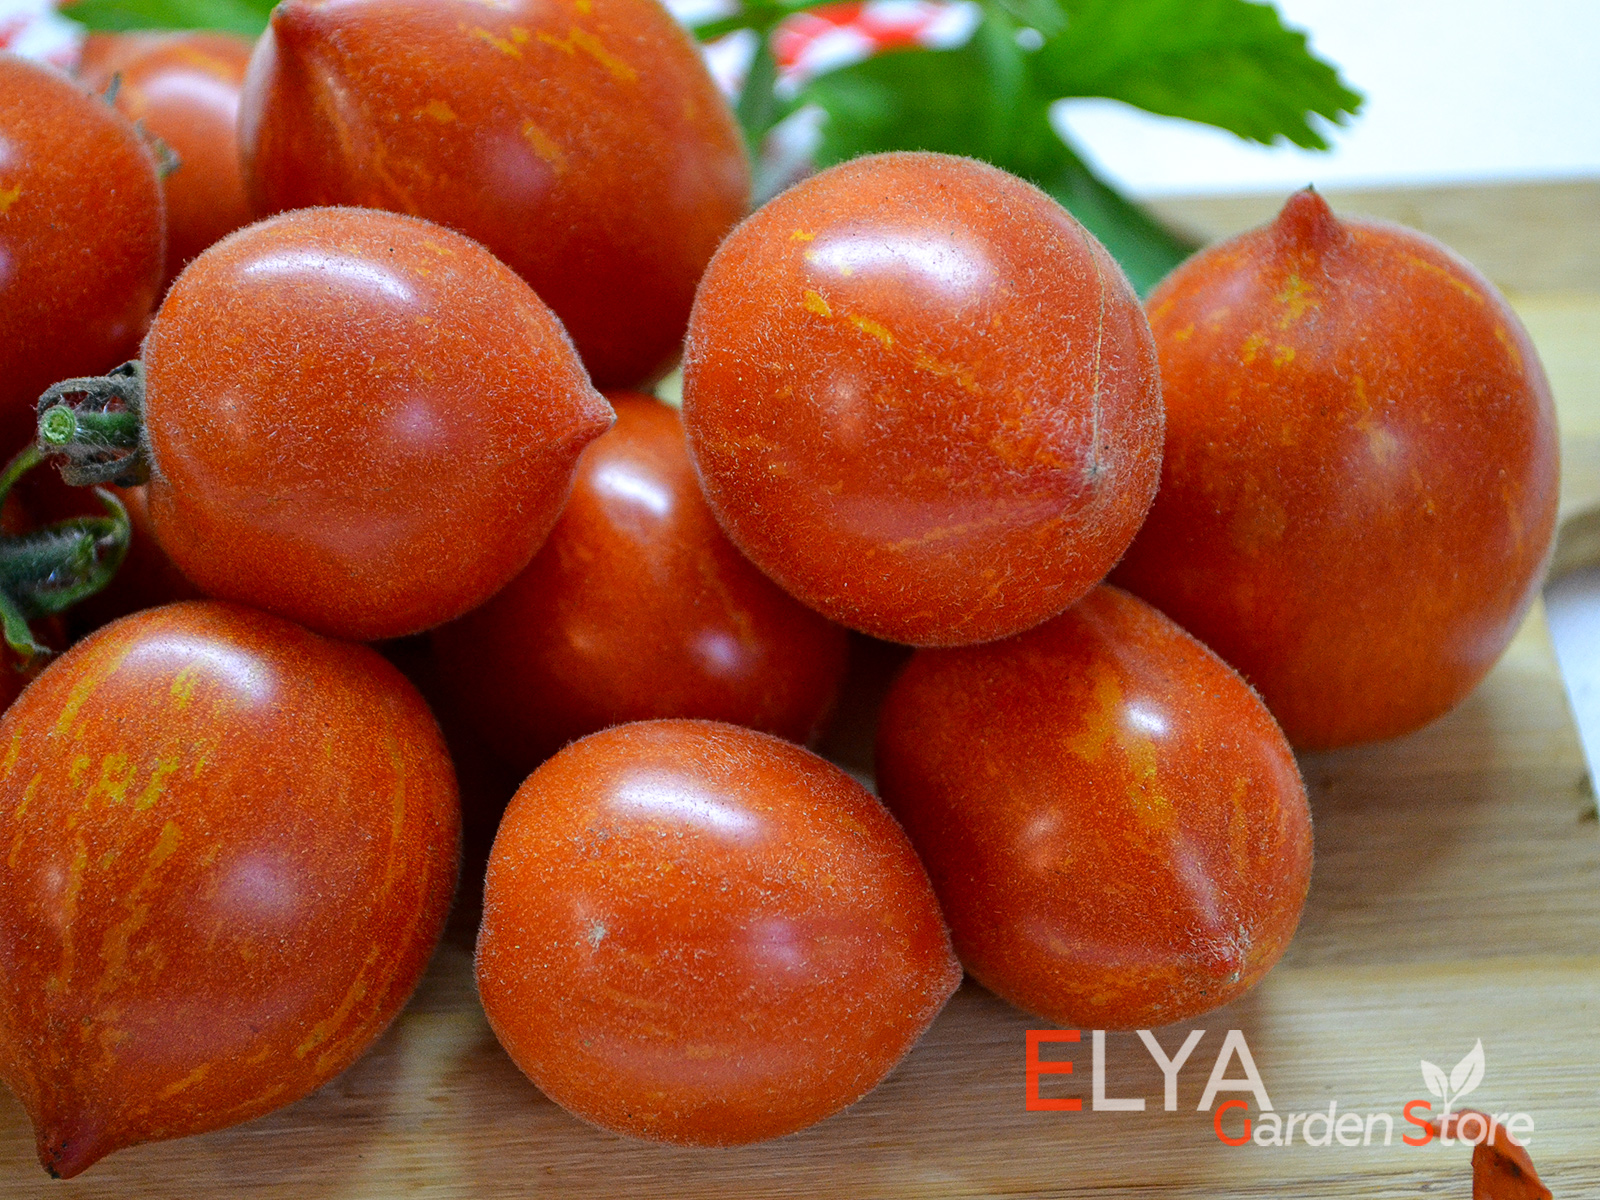 Коллекционный сорт томата Фузи Вузи - необычный опушенный сорт с хорошим вкусом, урожайный - фото магазина семян Elya Garden